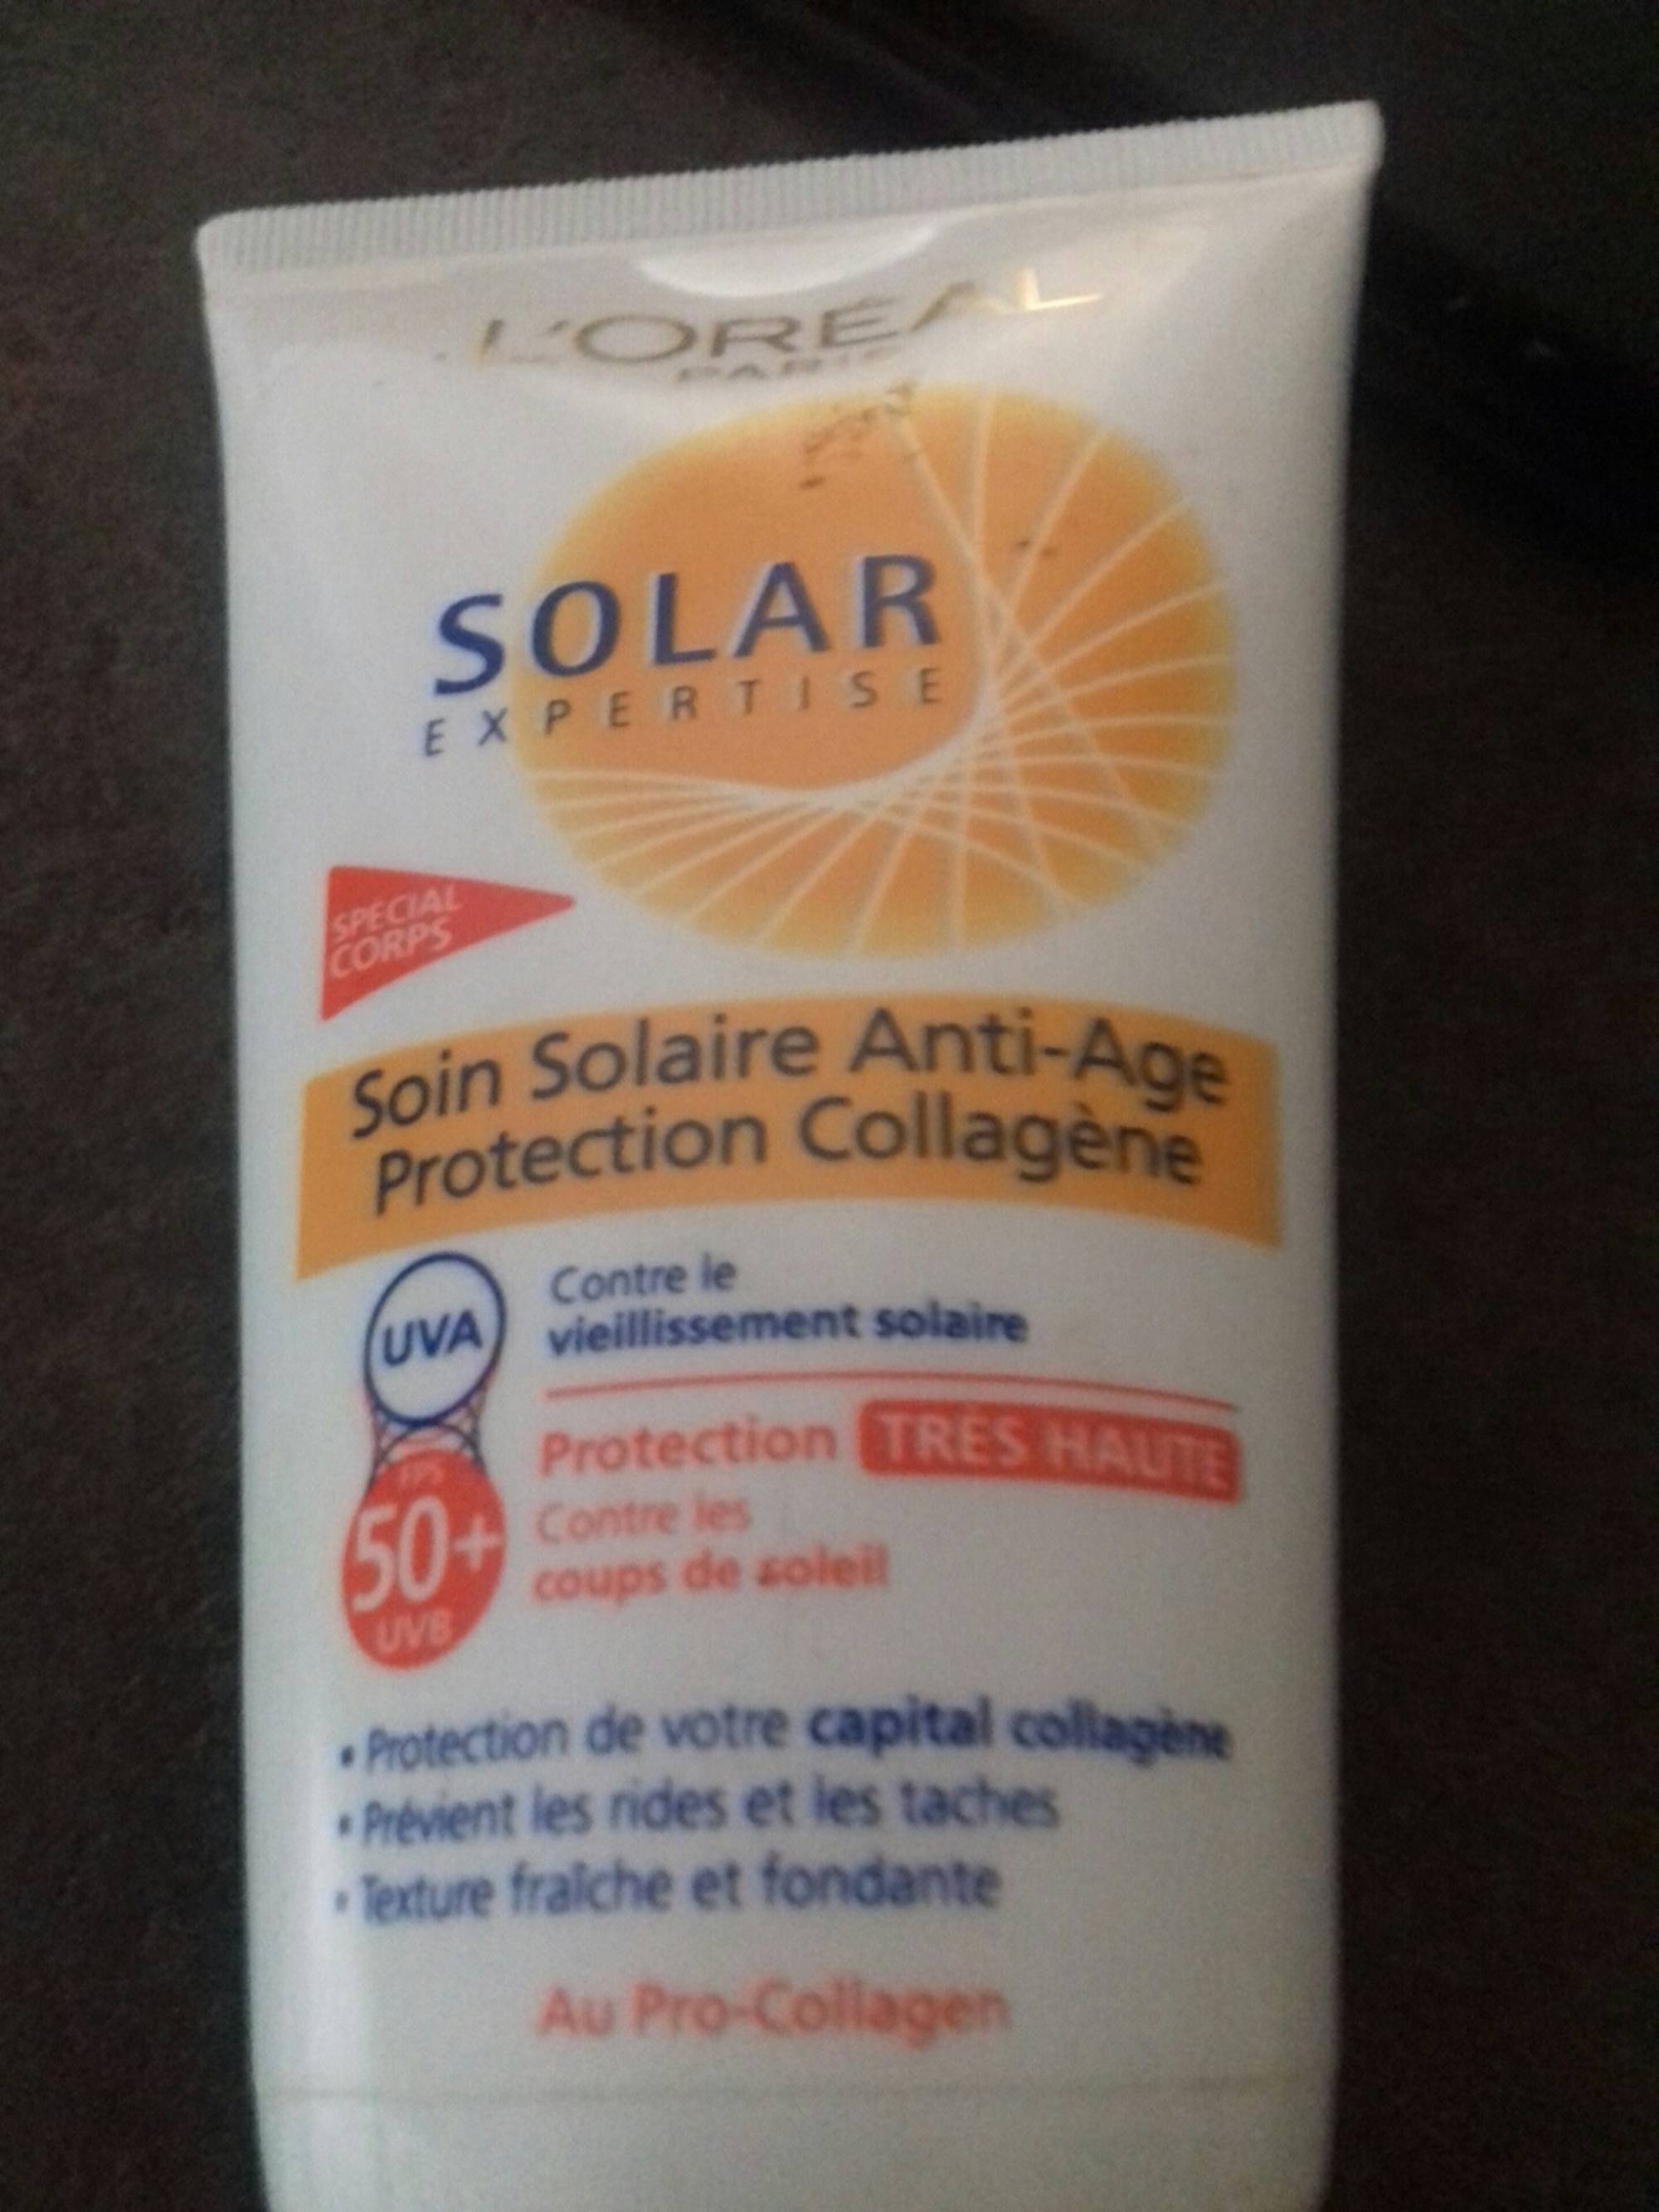 L'ORÉAL PARIS - Solar expertise - Soin solaire anti-âge protection collagène FPS 50+